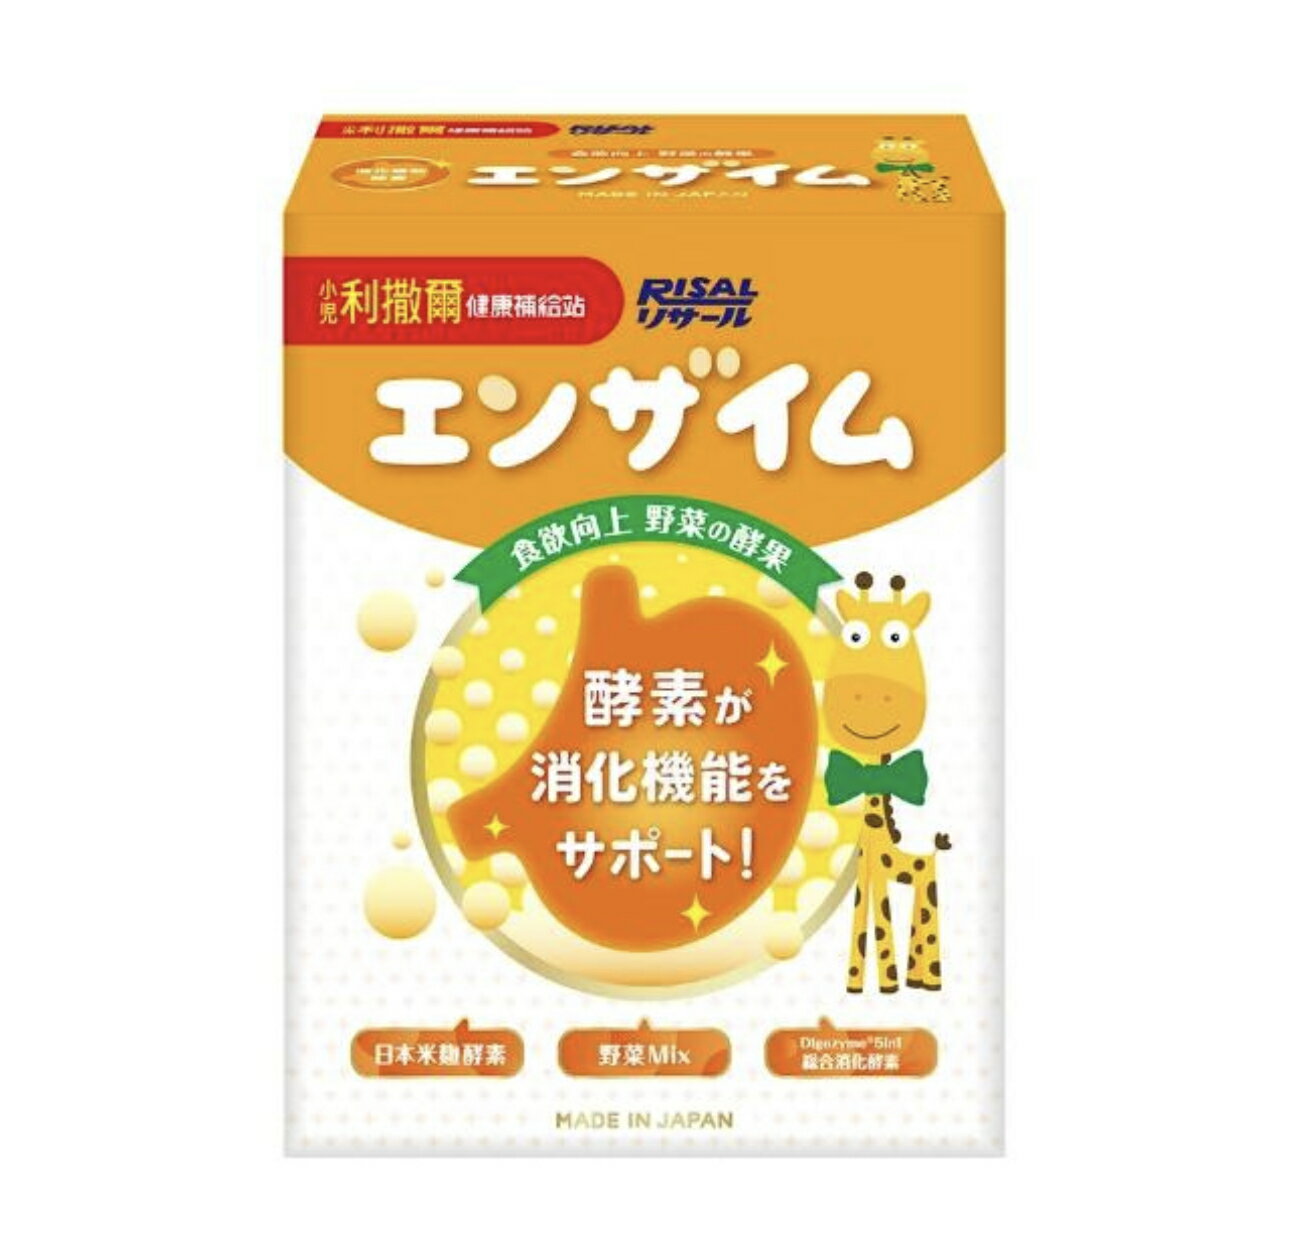 小兒利撒爾 食欲向上 蔬果消化酵素(45包/盒) 日本製造